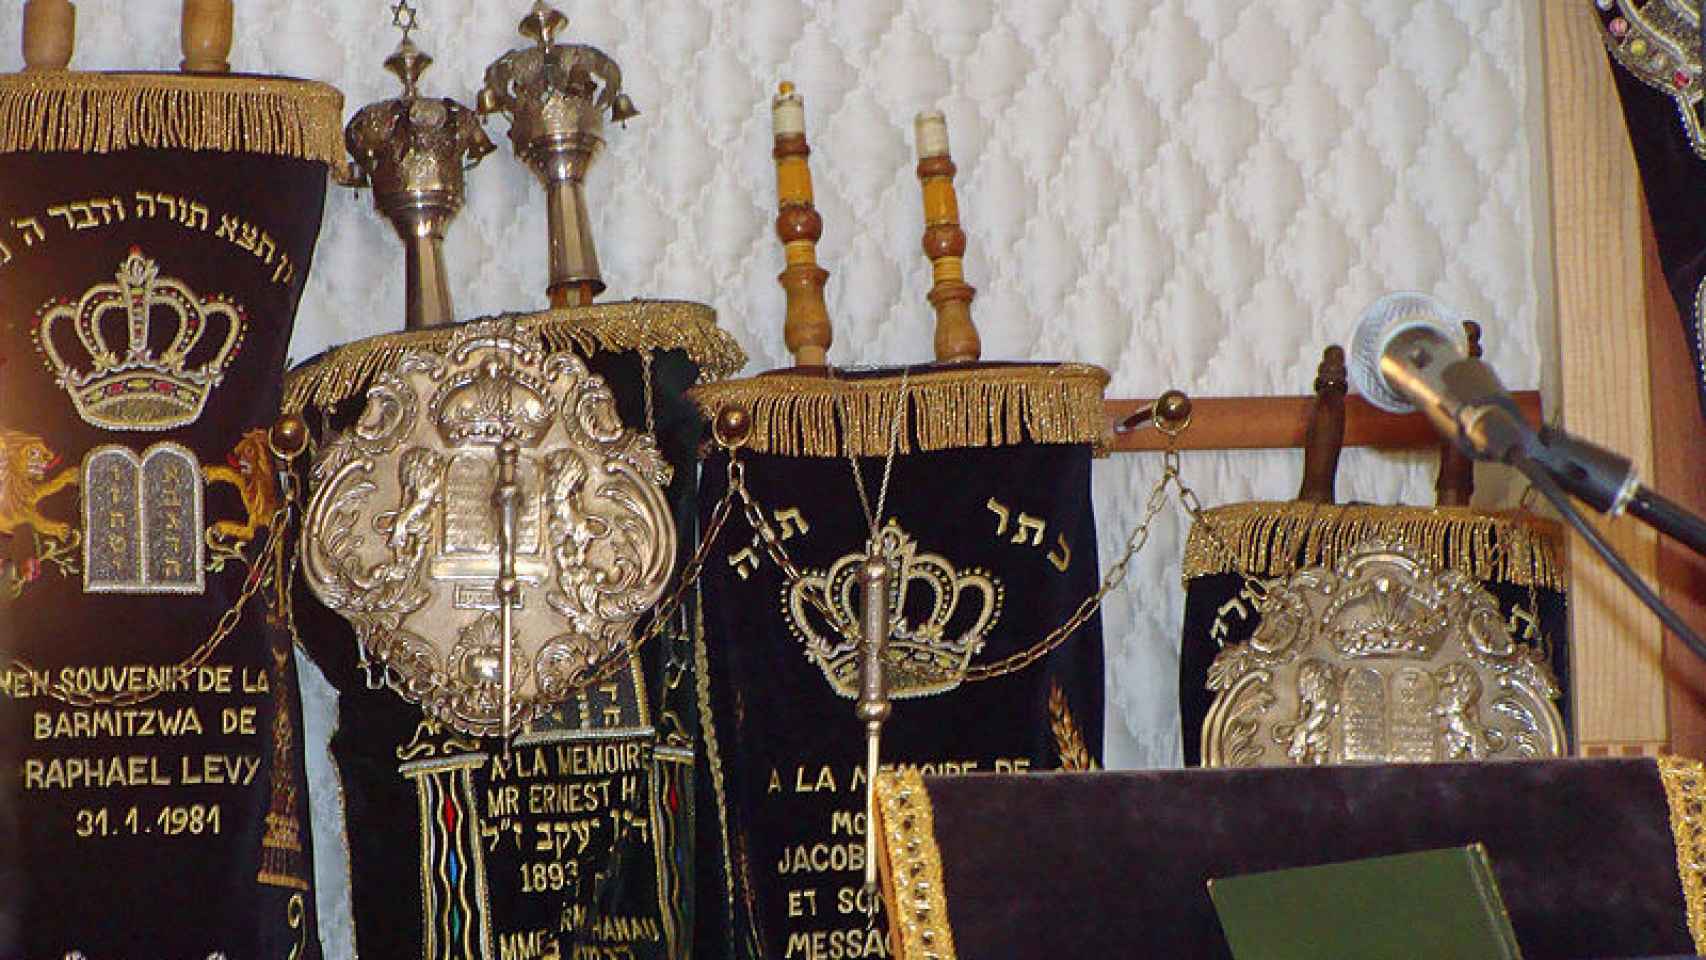 Synagogue de Saint-Avold, rollos de la Torah, libros de la Biblia esenciales para el judaísmo